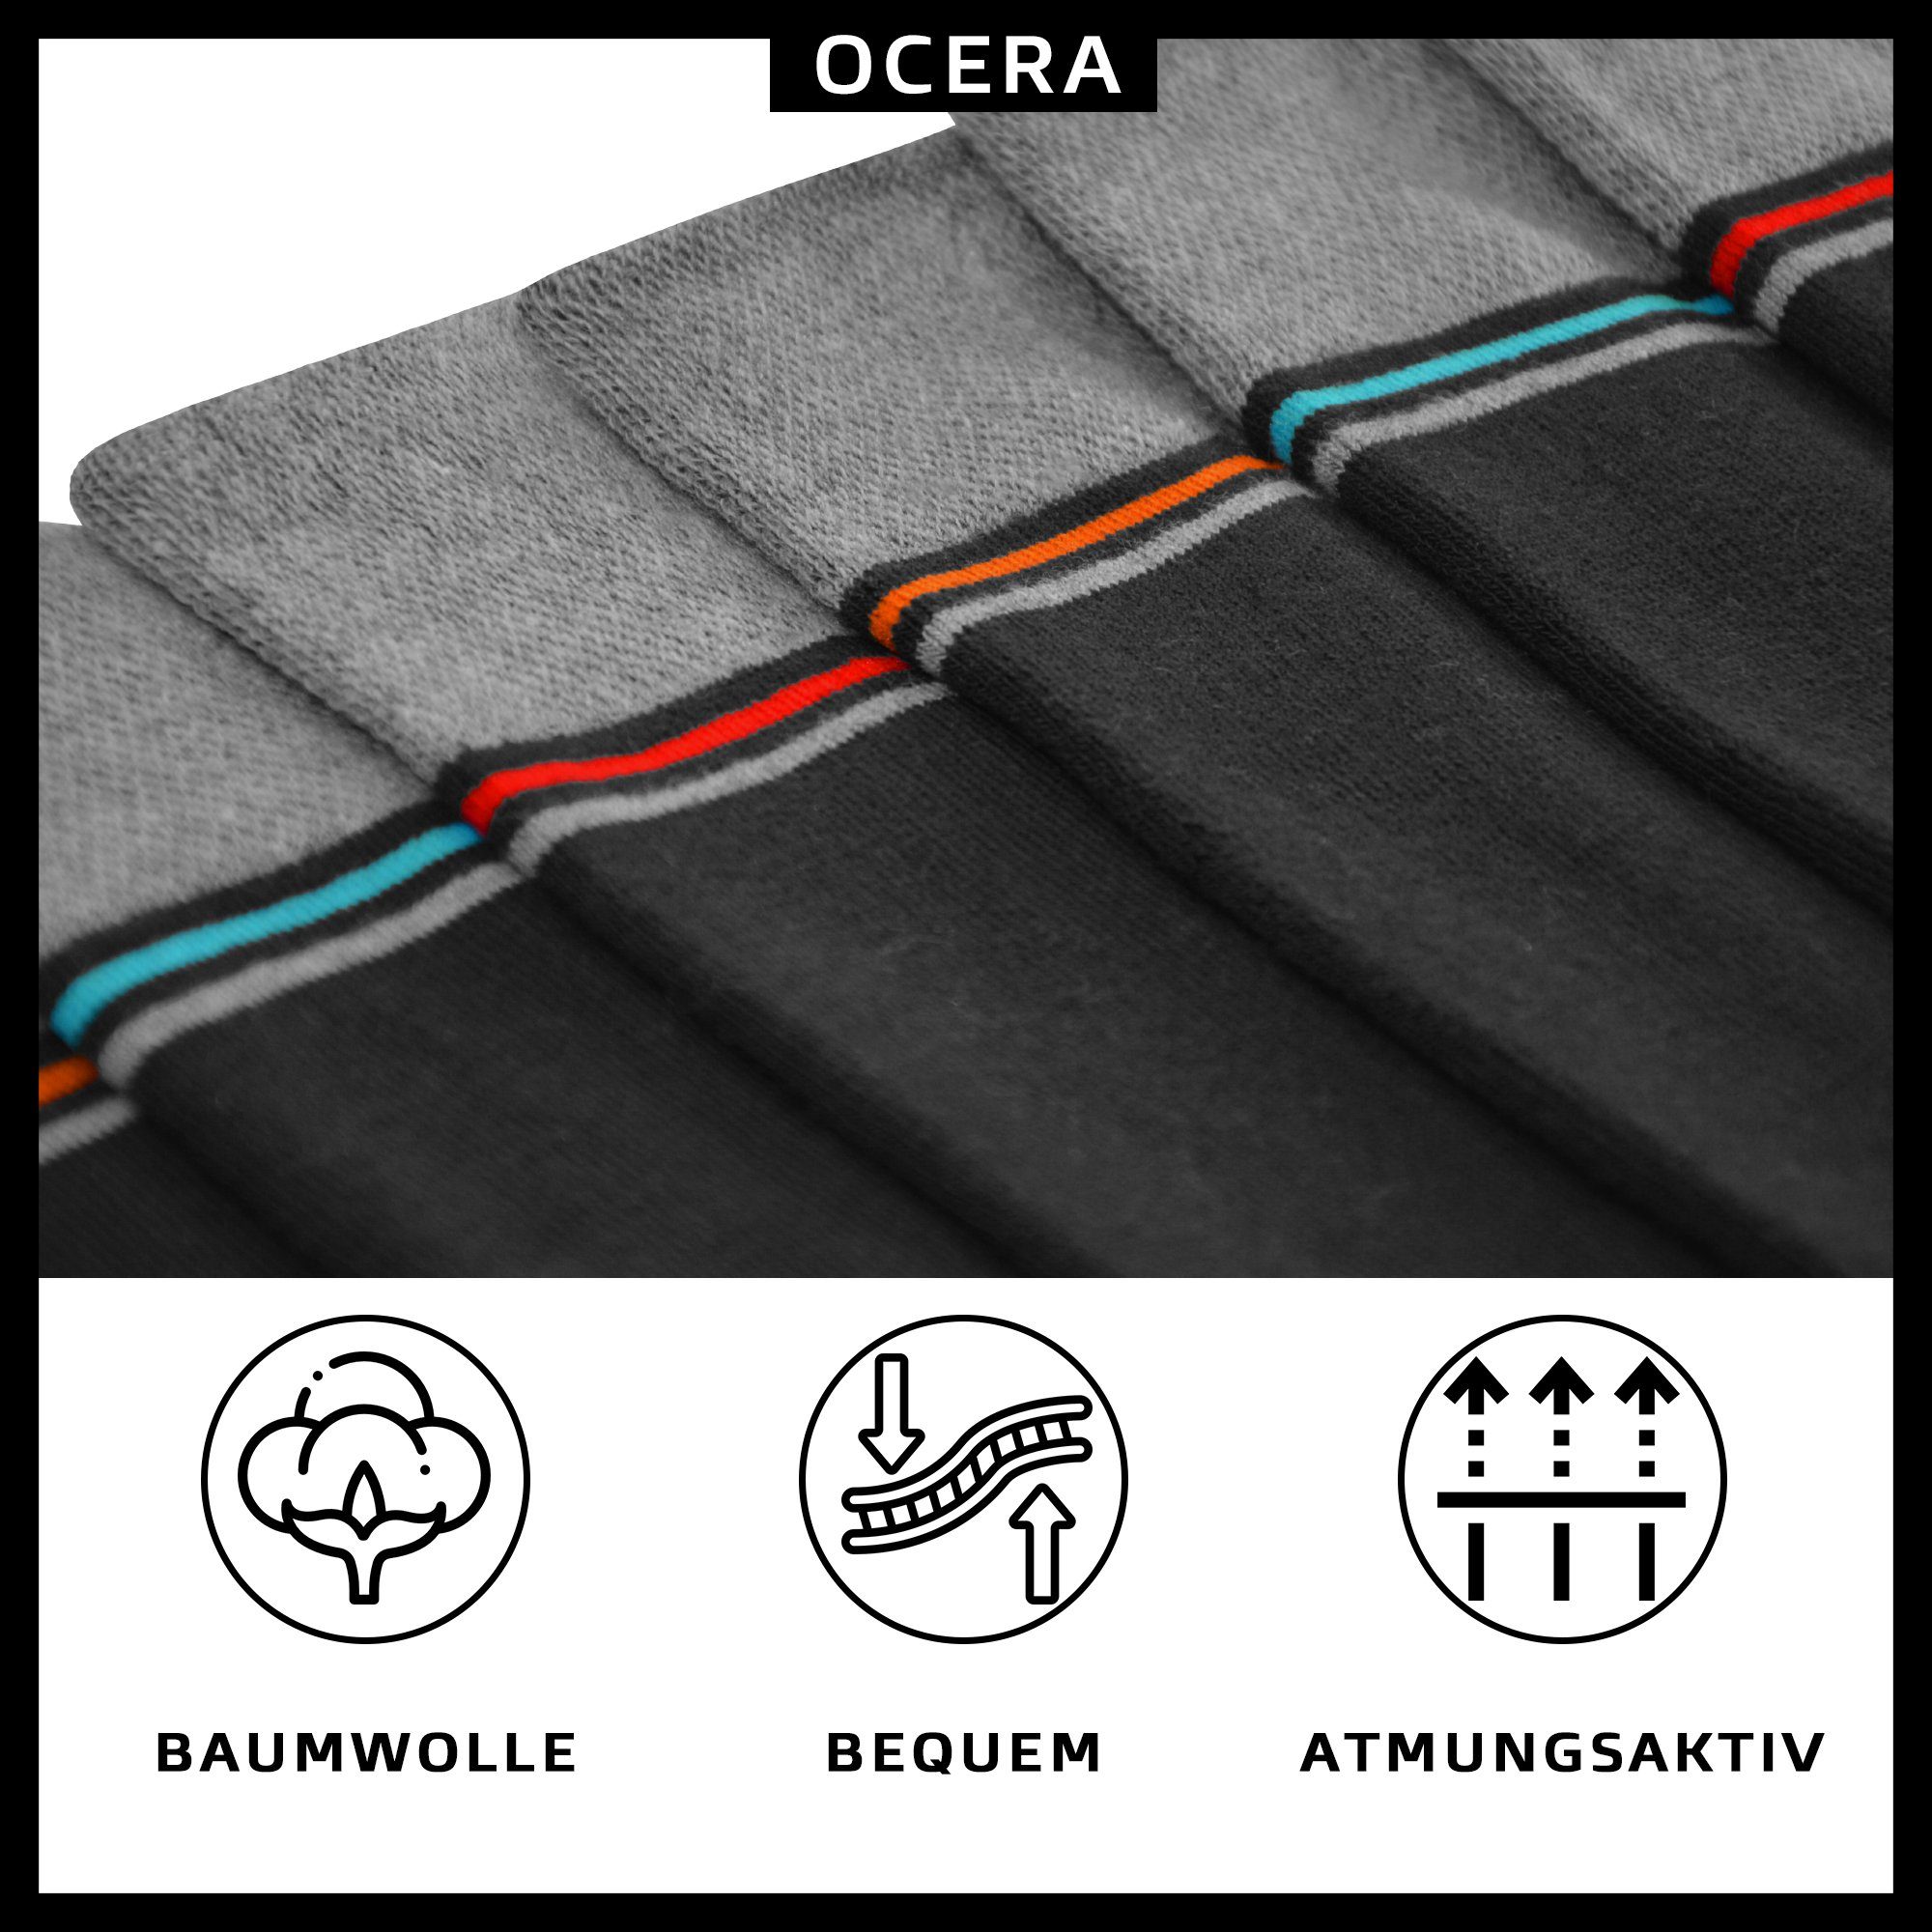 OCERA Funktionssocken THERMO Socken, 6 mit Farbstreifen modernen o. Design Wintersocken 6x Anthrazit Paar